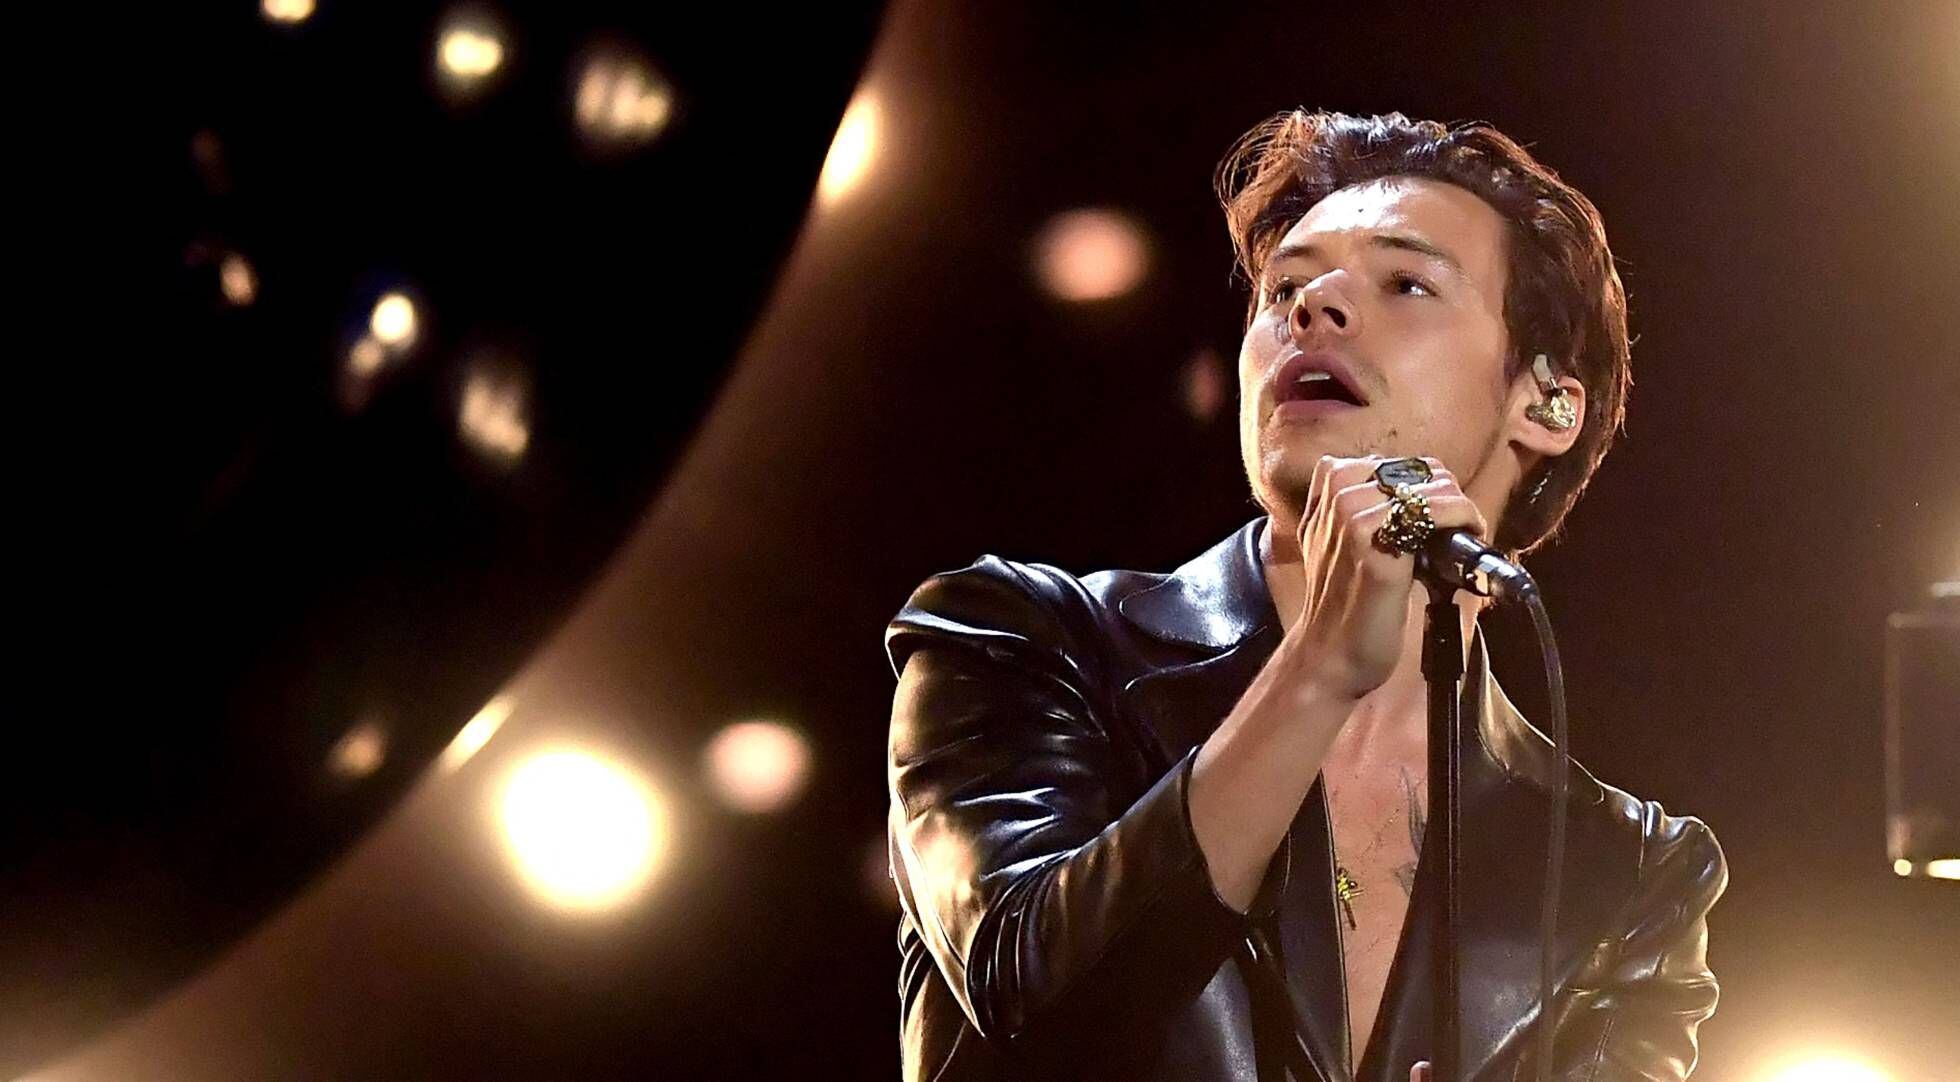 El cantante británico Harry Styles se presenta durante la 63ª ceremonia anual de los Premios Grammy, transmitida en vivo desde el Staples Center en Los Ángeles, el 14 de marzo.